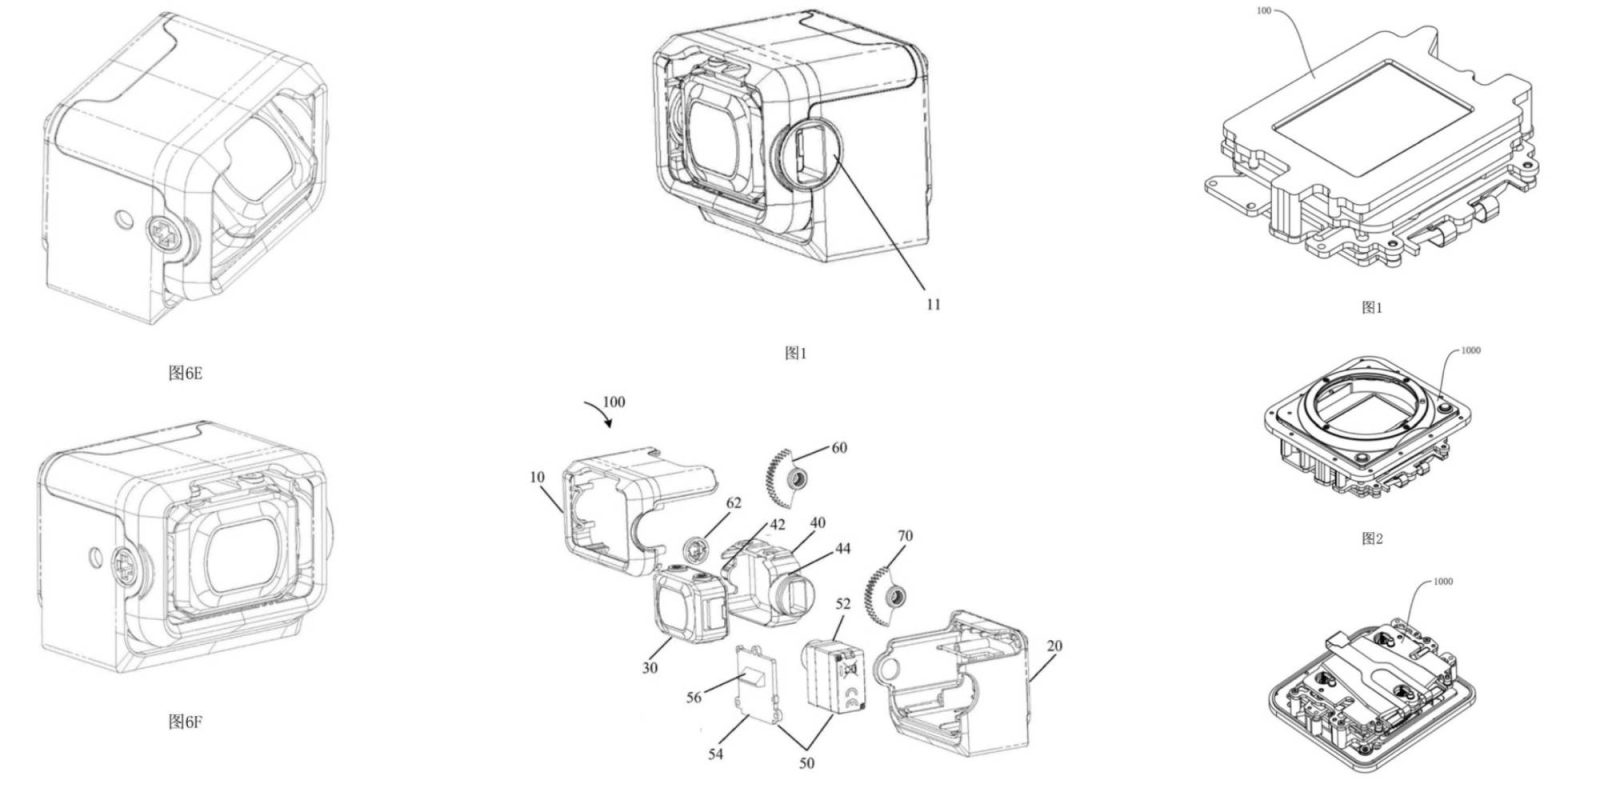 DJI patent camera OIS